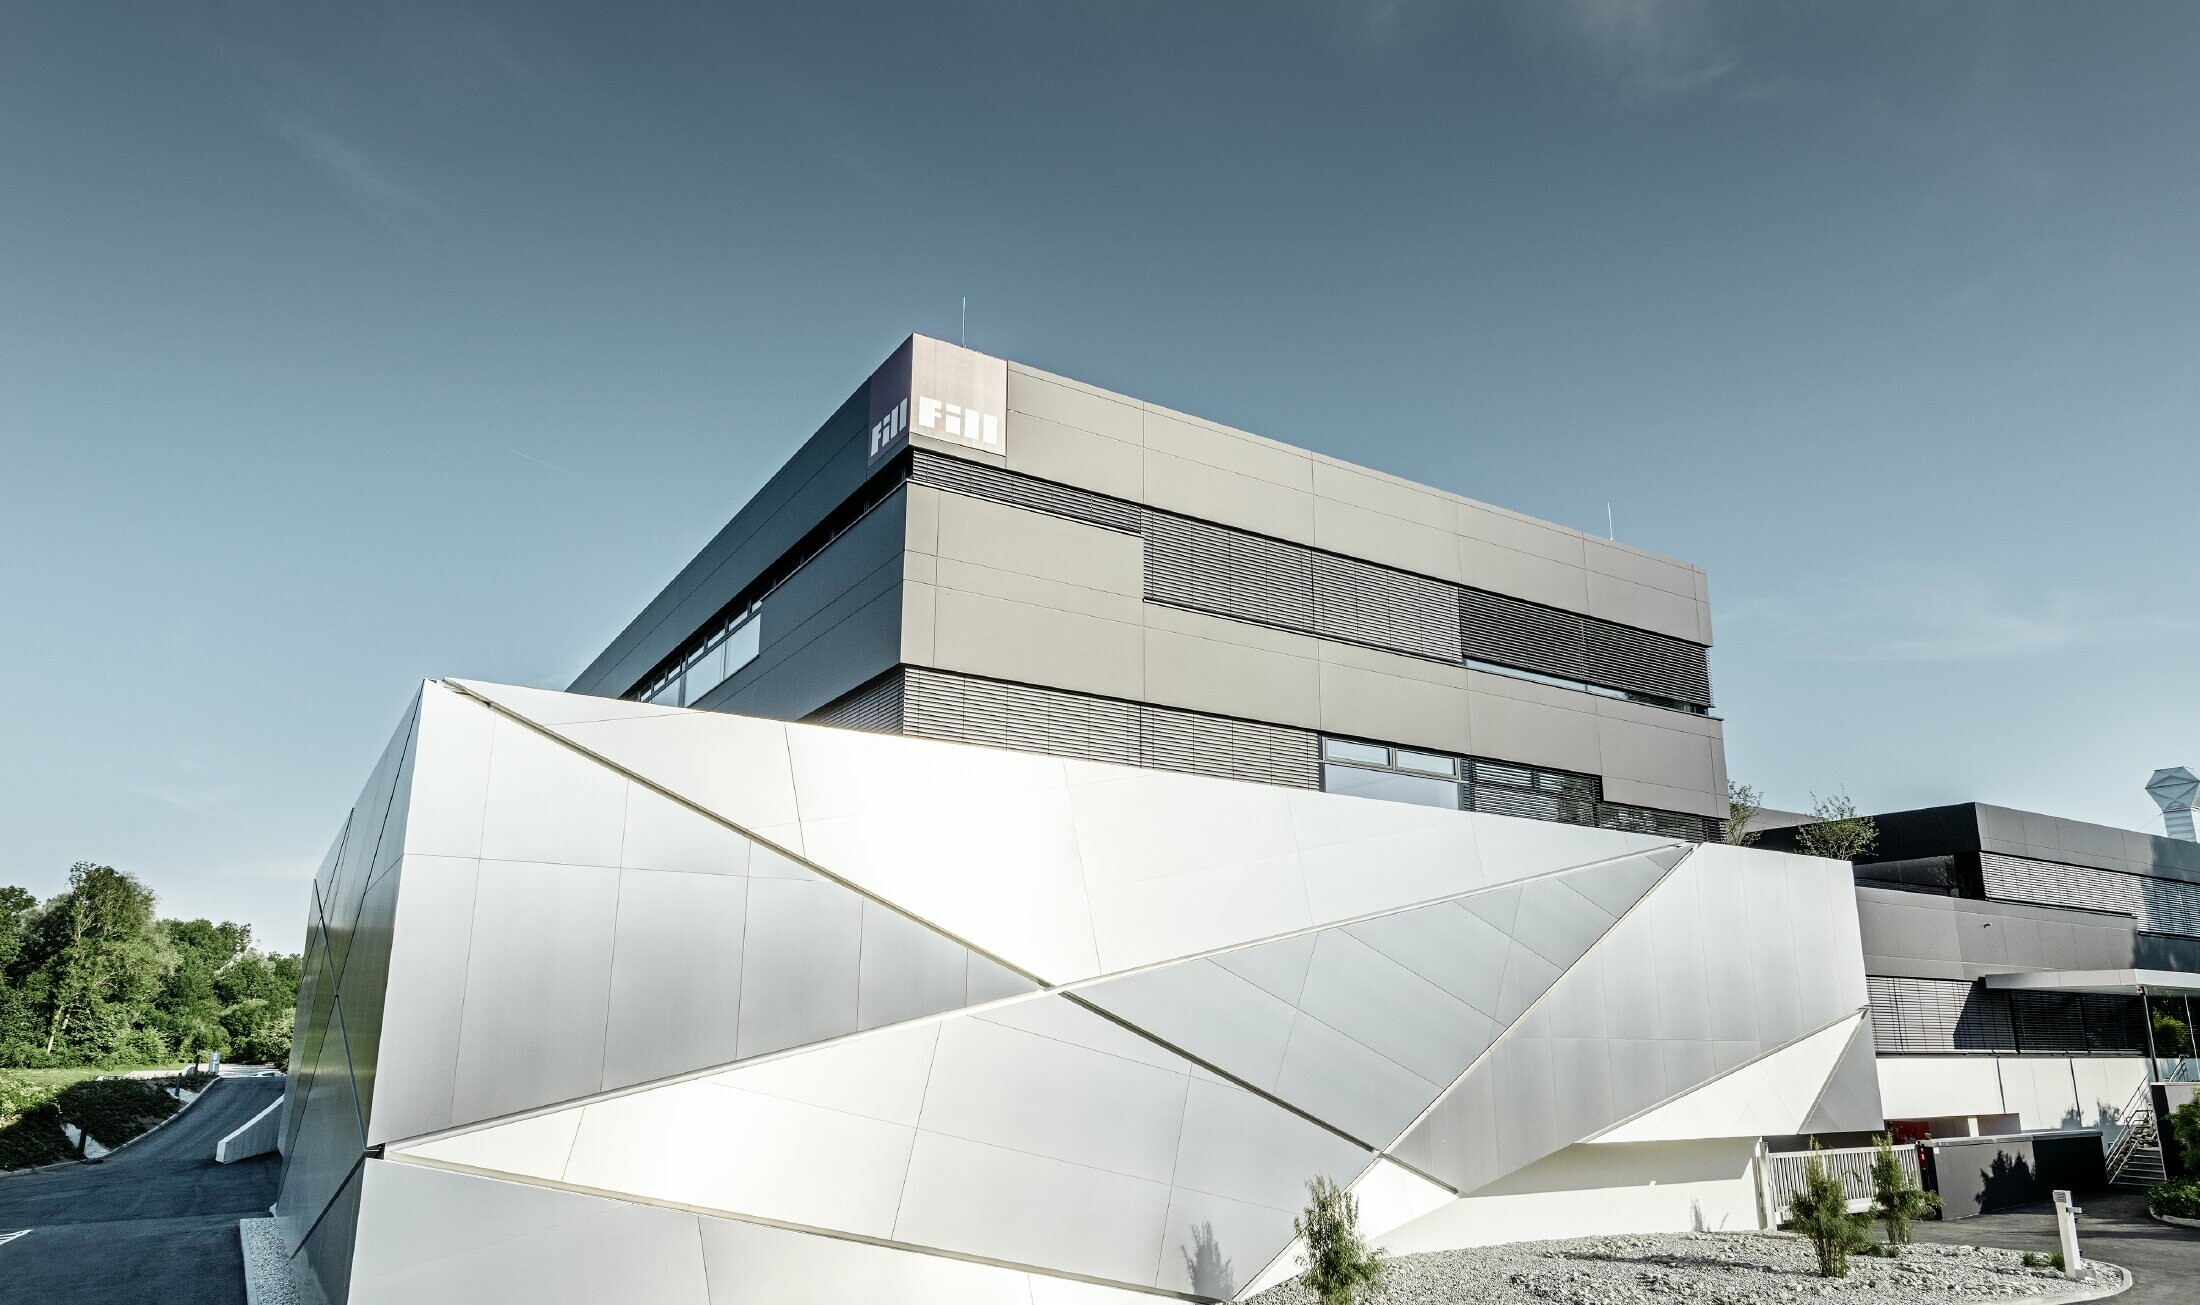 Bedrijfsgebouw (Fill) met futuristische gevel met composietplaten in geborsteld aluminium en achtergrondverlichting in de voegen.